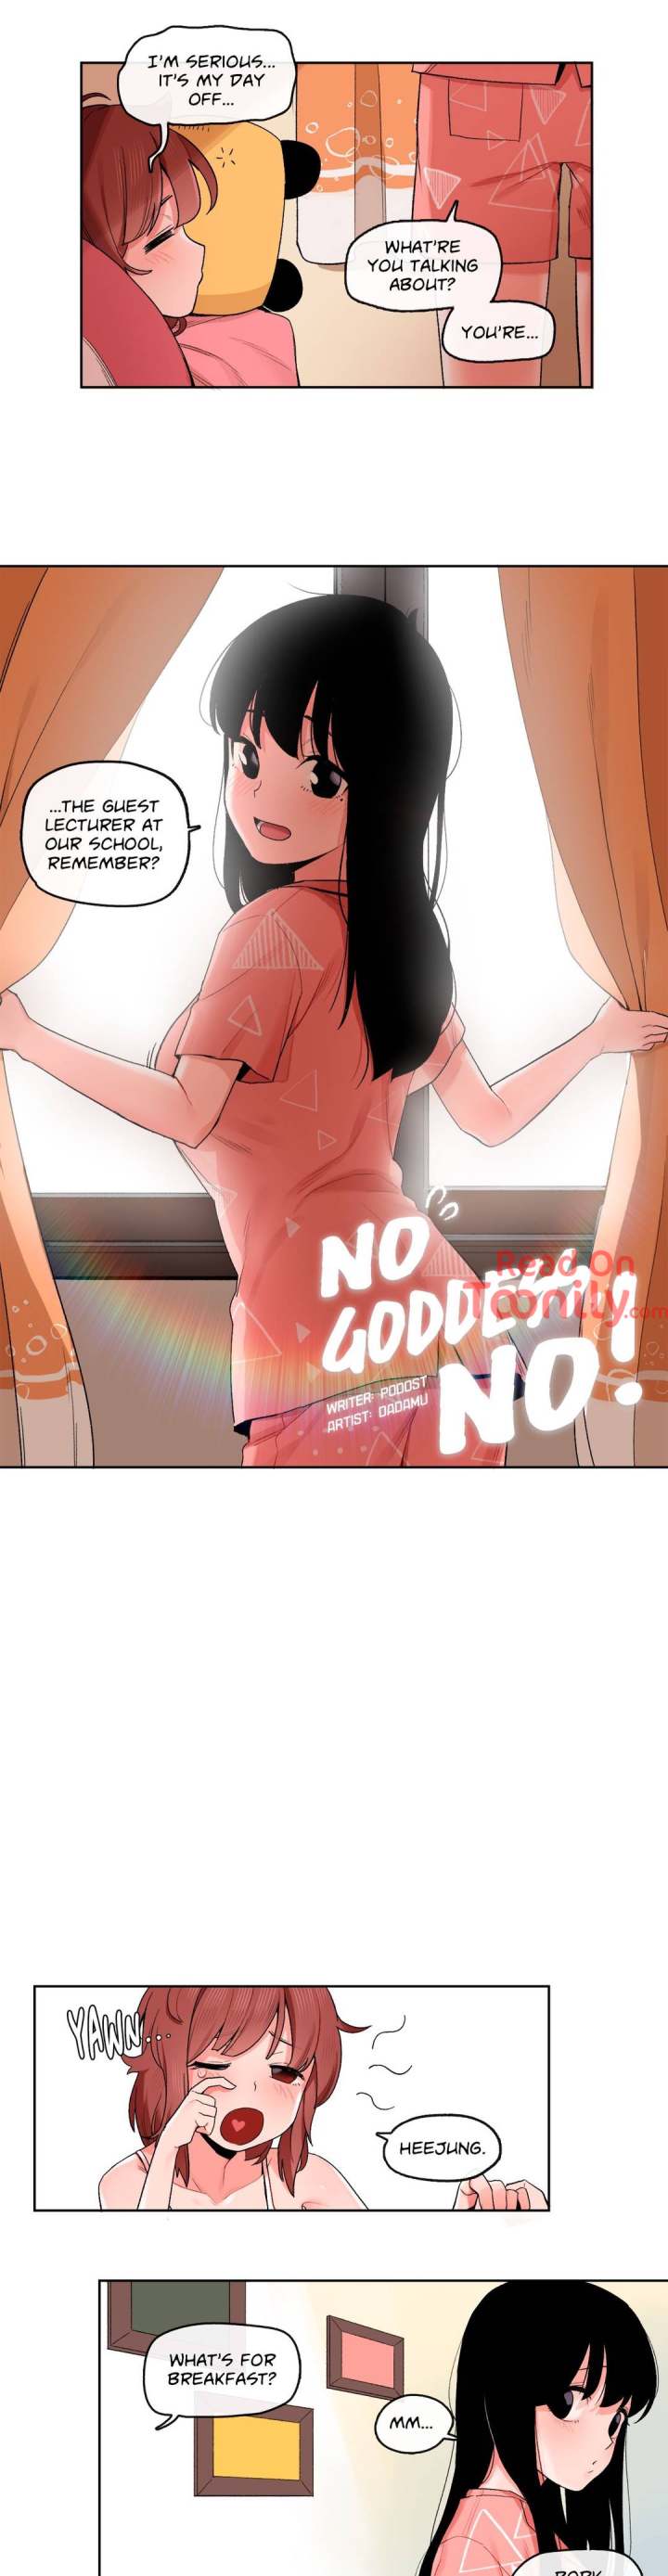 No Goddess, No! - Chapter 28 Page 2